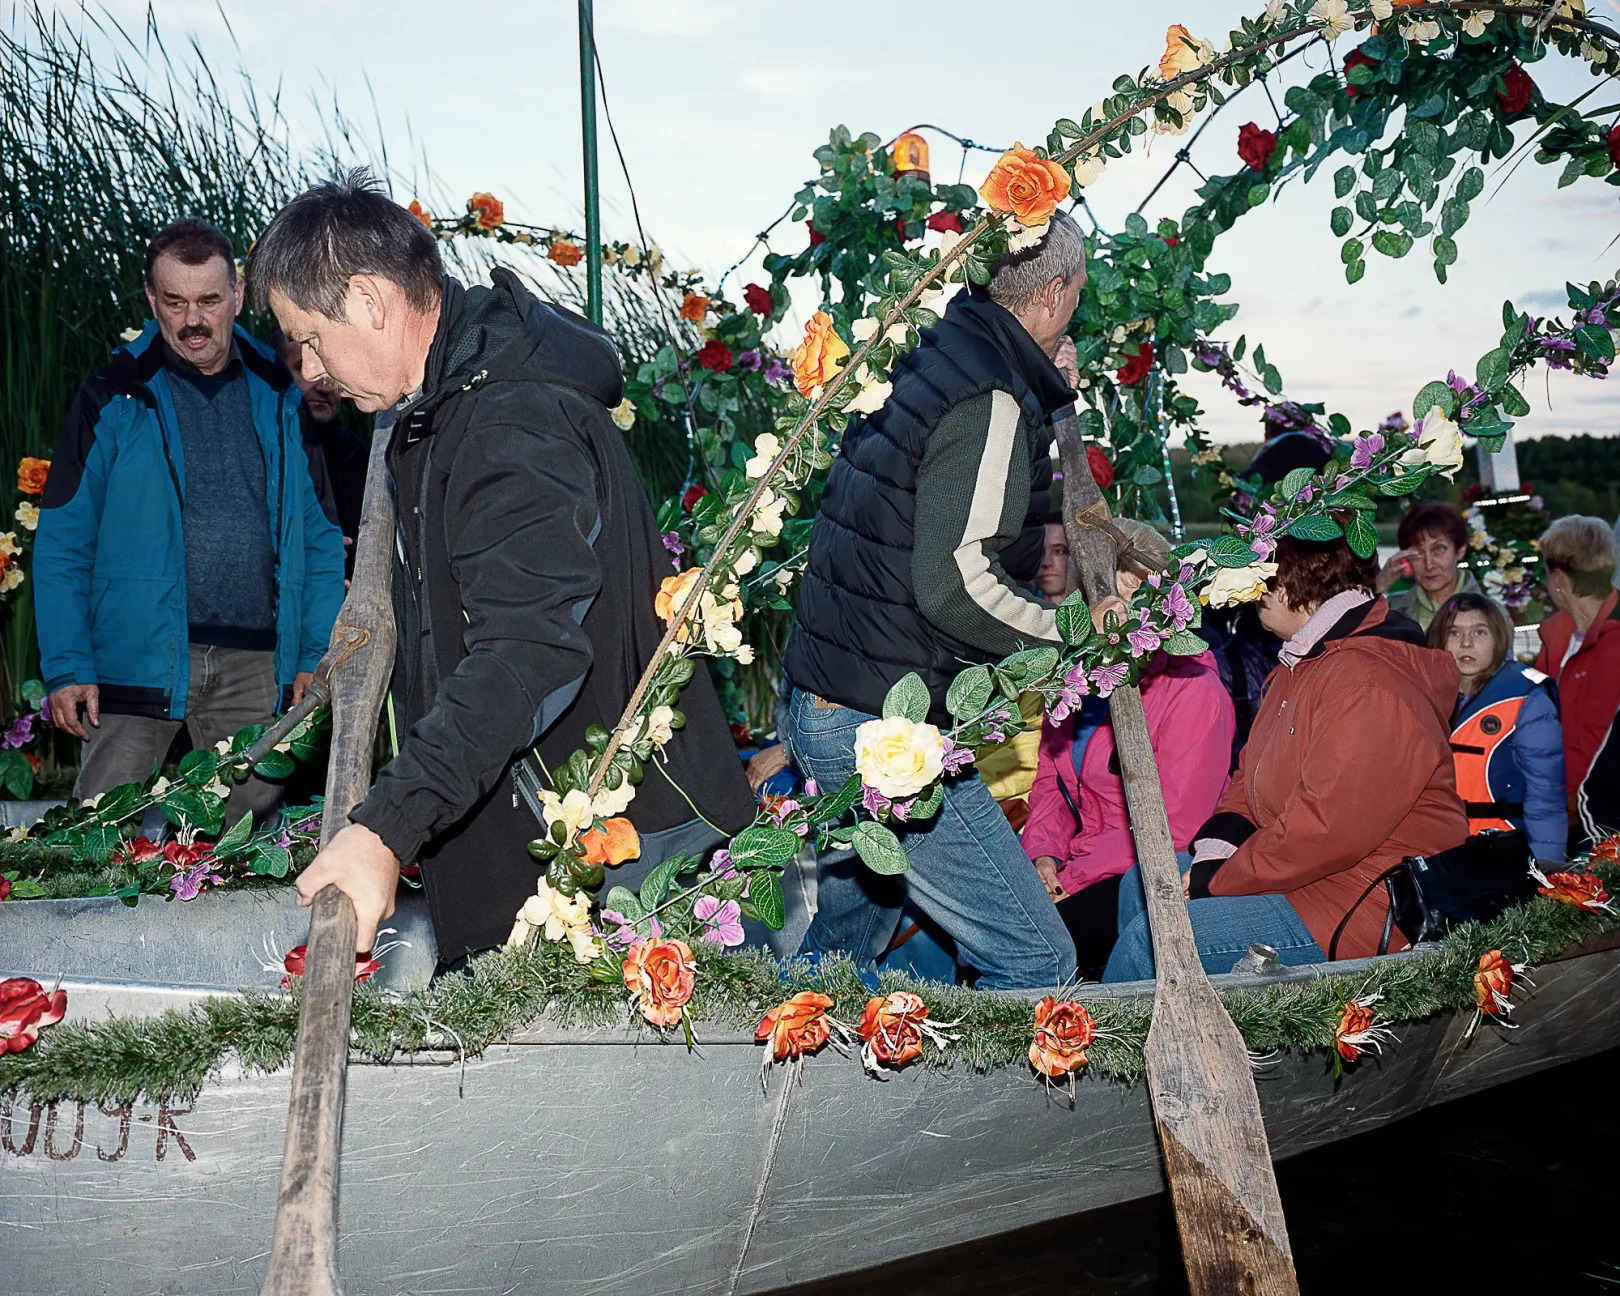 Szentivánéji fesztivál Osiecznában 2015. június 25-én. A szláv országokban az év leghosszabb napján hagyományosan ilyen ünnepségekkel tisztelegnek a termékenység előtt. Osiecznában például kicsónakáznak a tóra, hogy virágkoszorúkat helyezzenek a vízre – Fotó: Michal Adamski